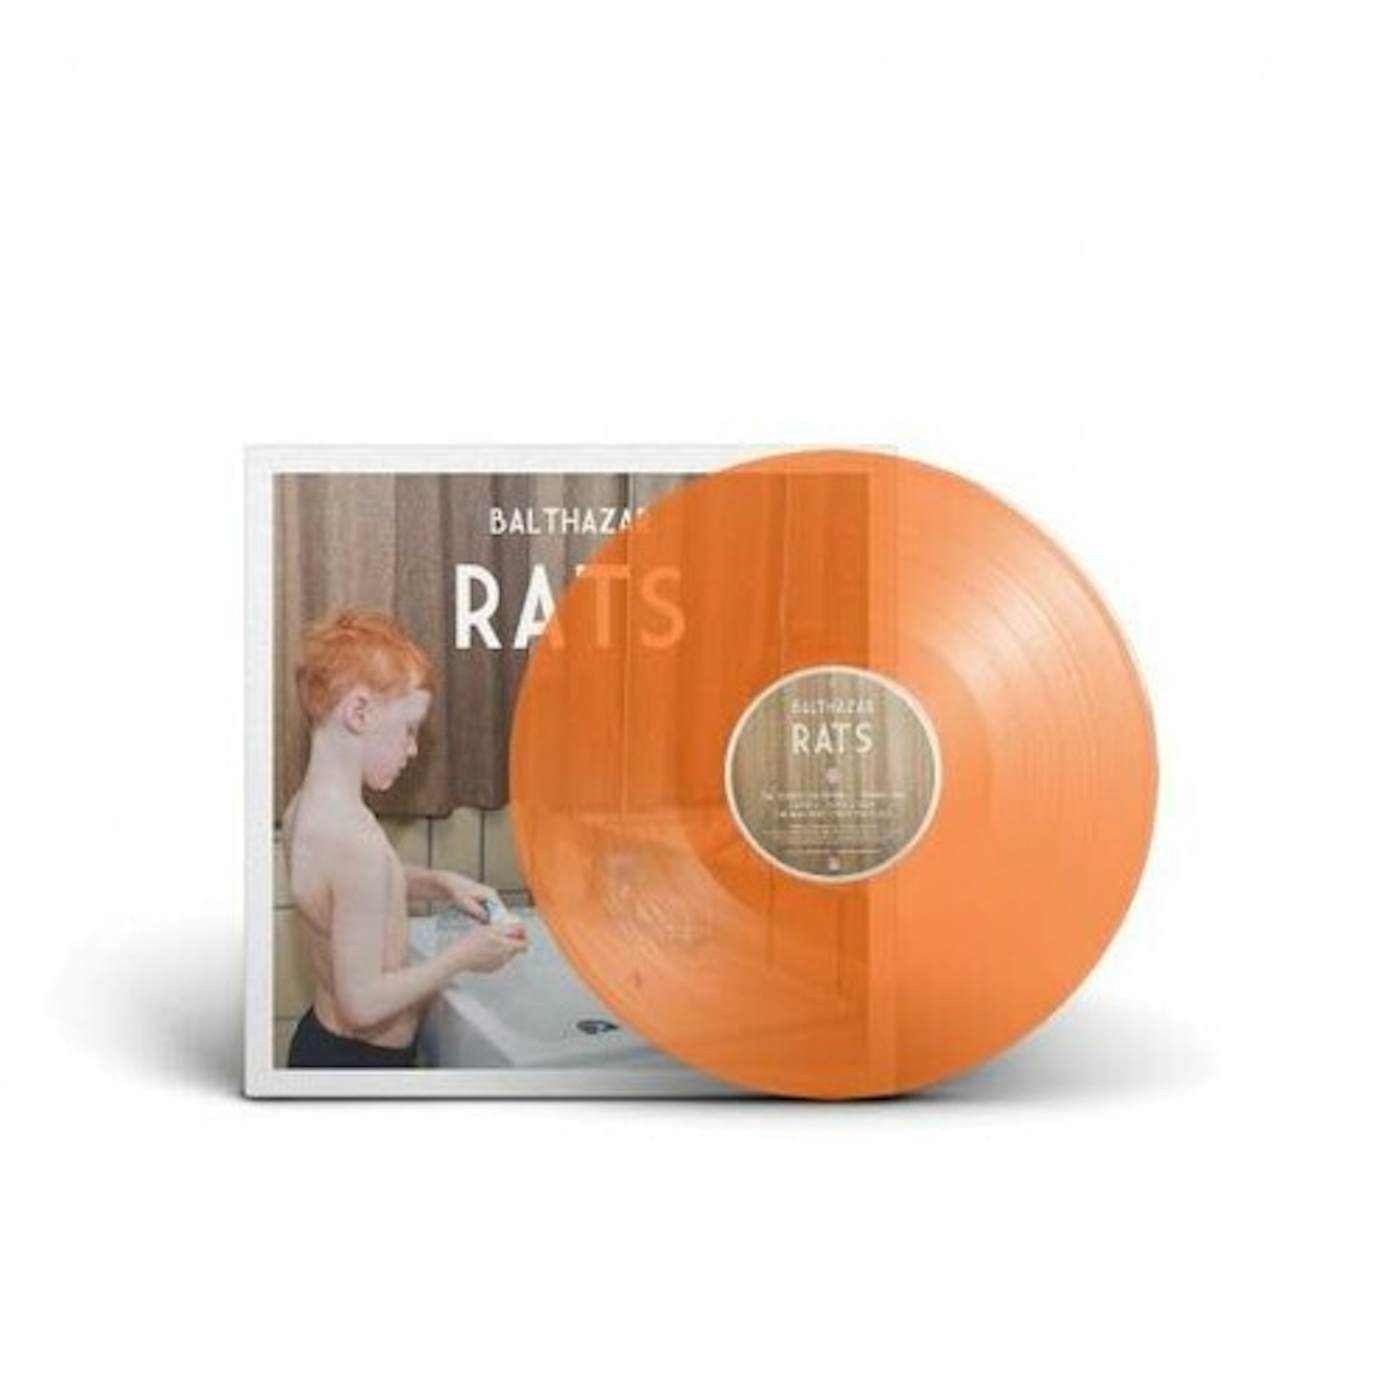 Balthazar Rats (Orange) Vinyl Record